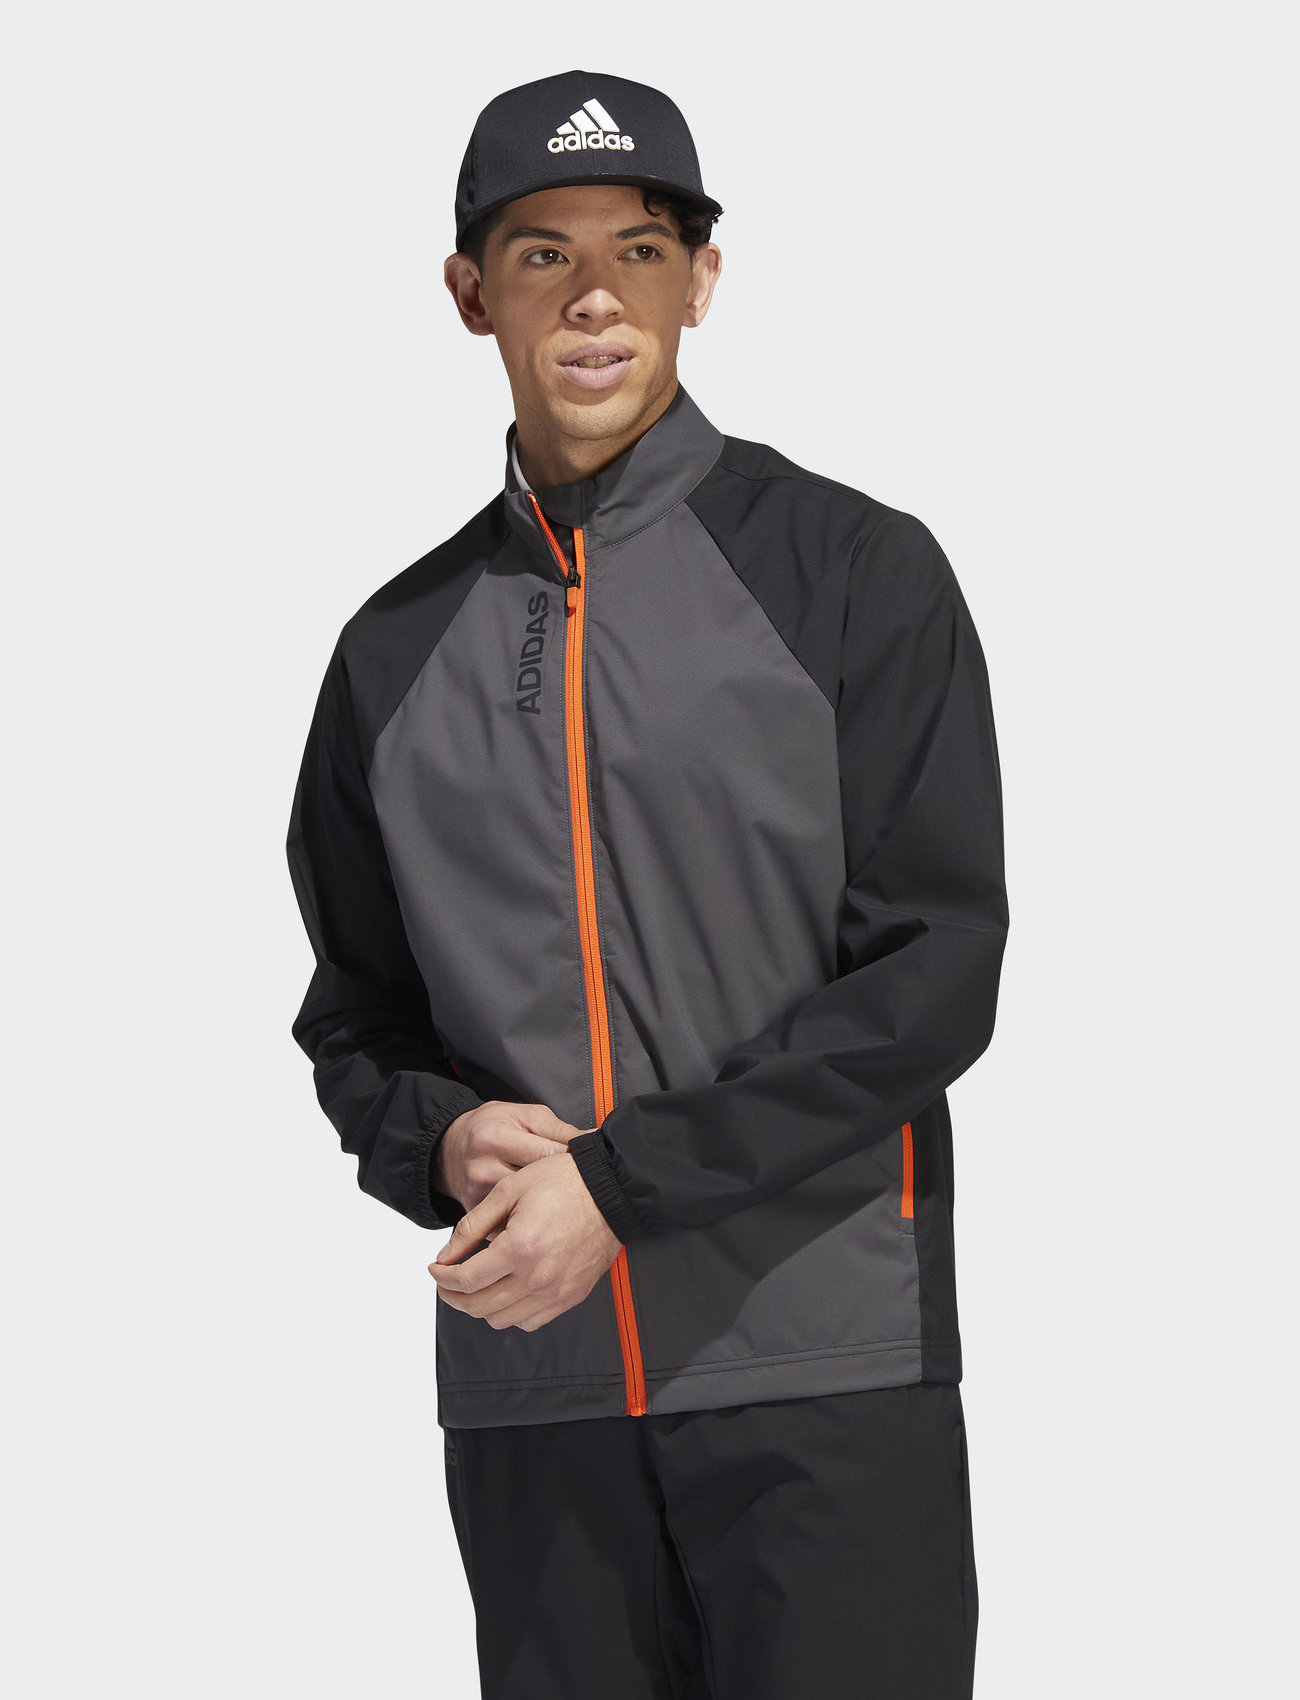 adidas Golf Prov Jacket